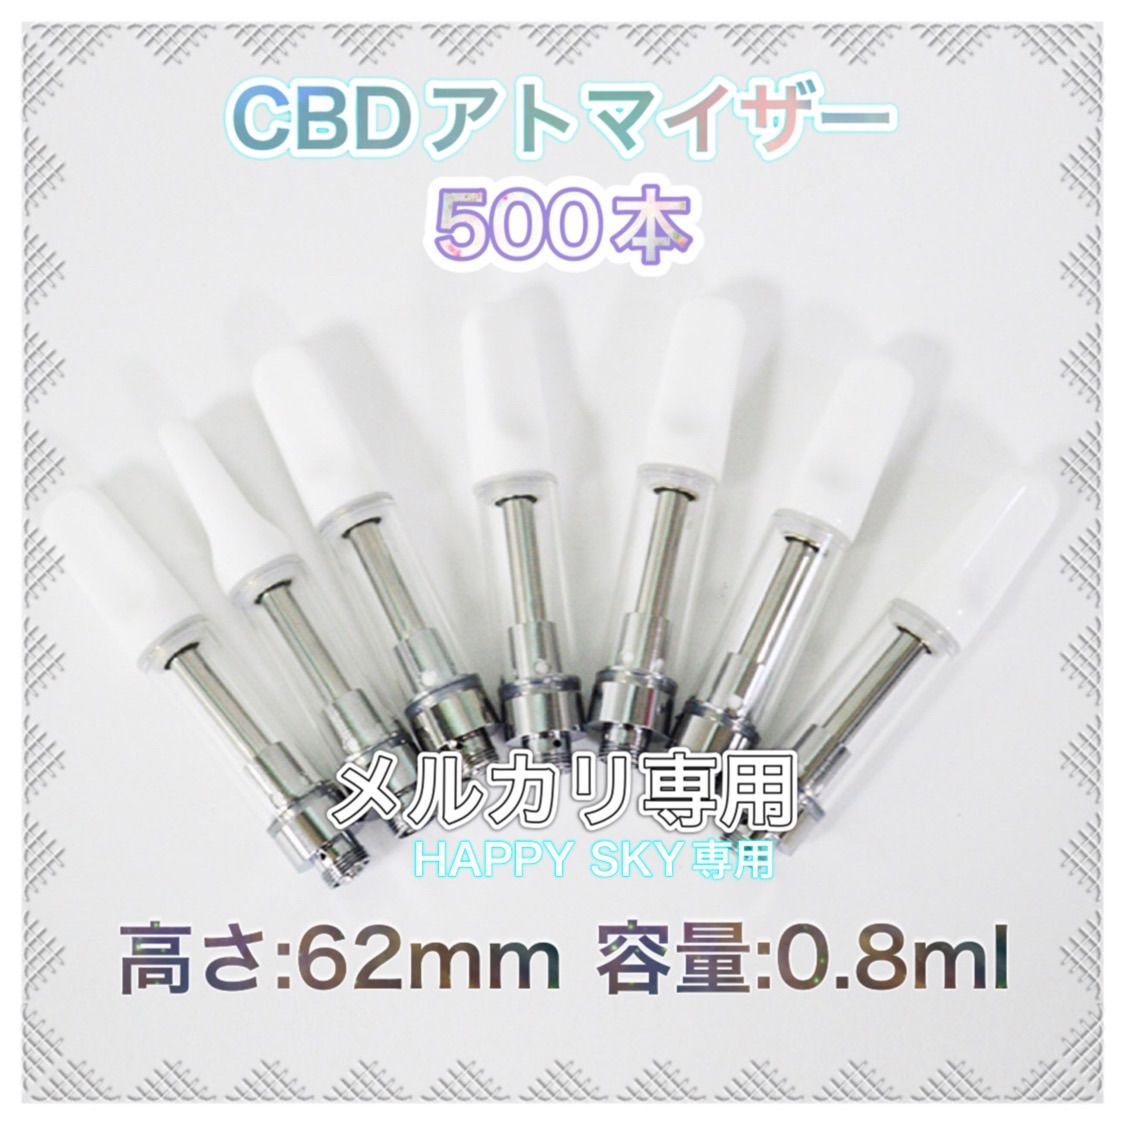 白 CBDアトマイザー 500本 0.8ml-